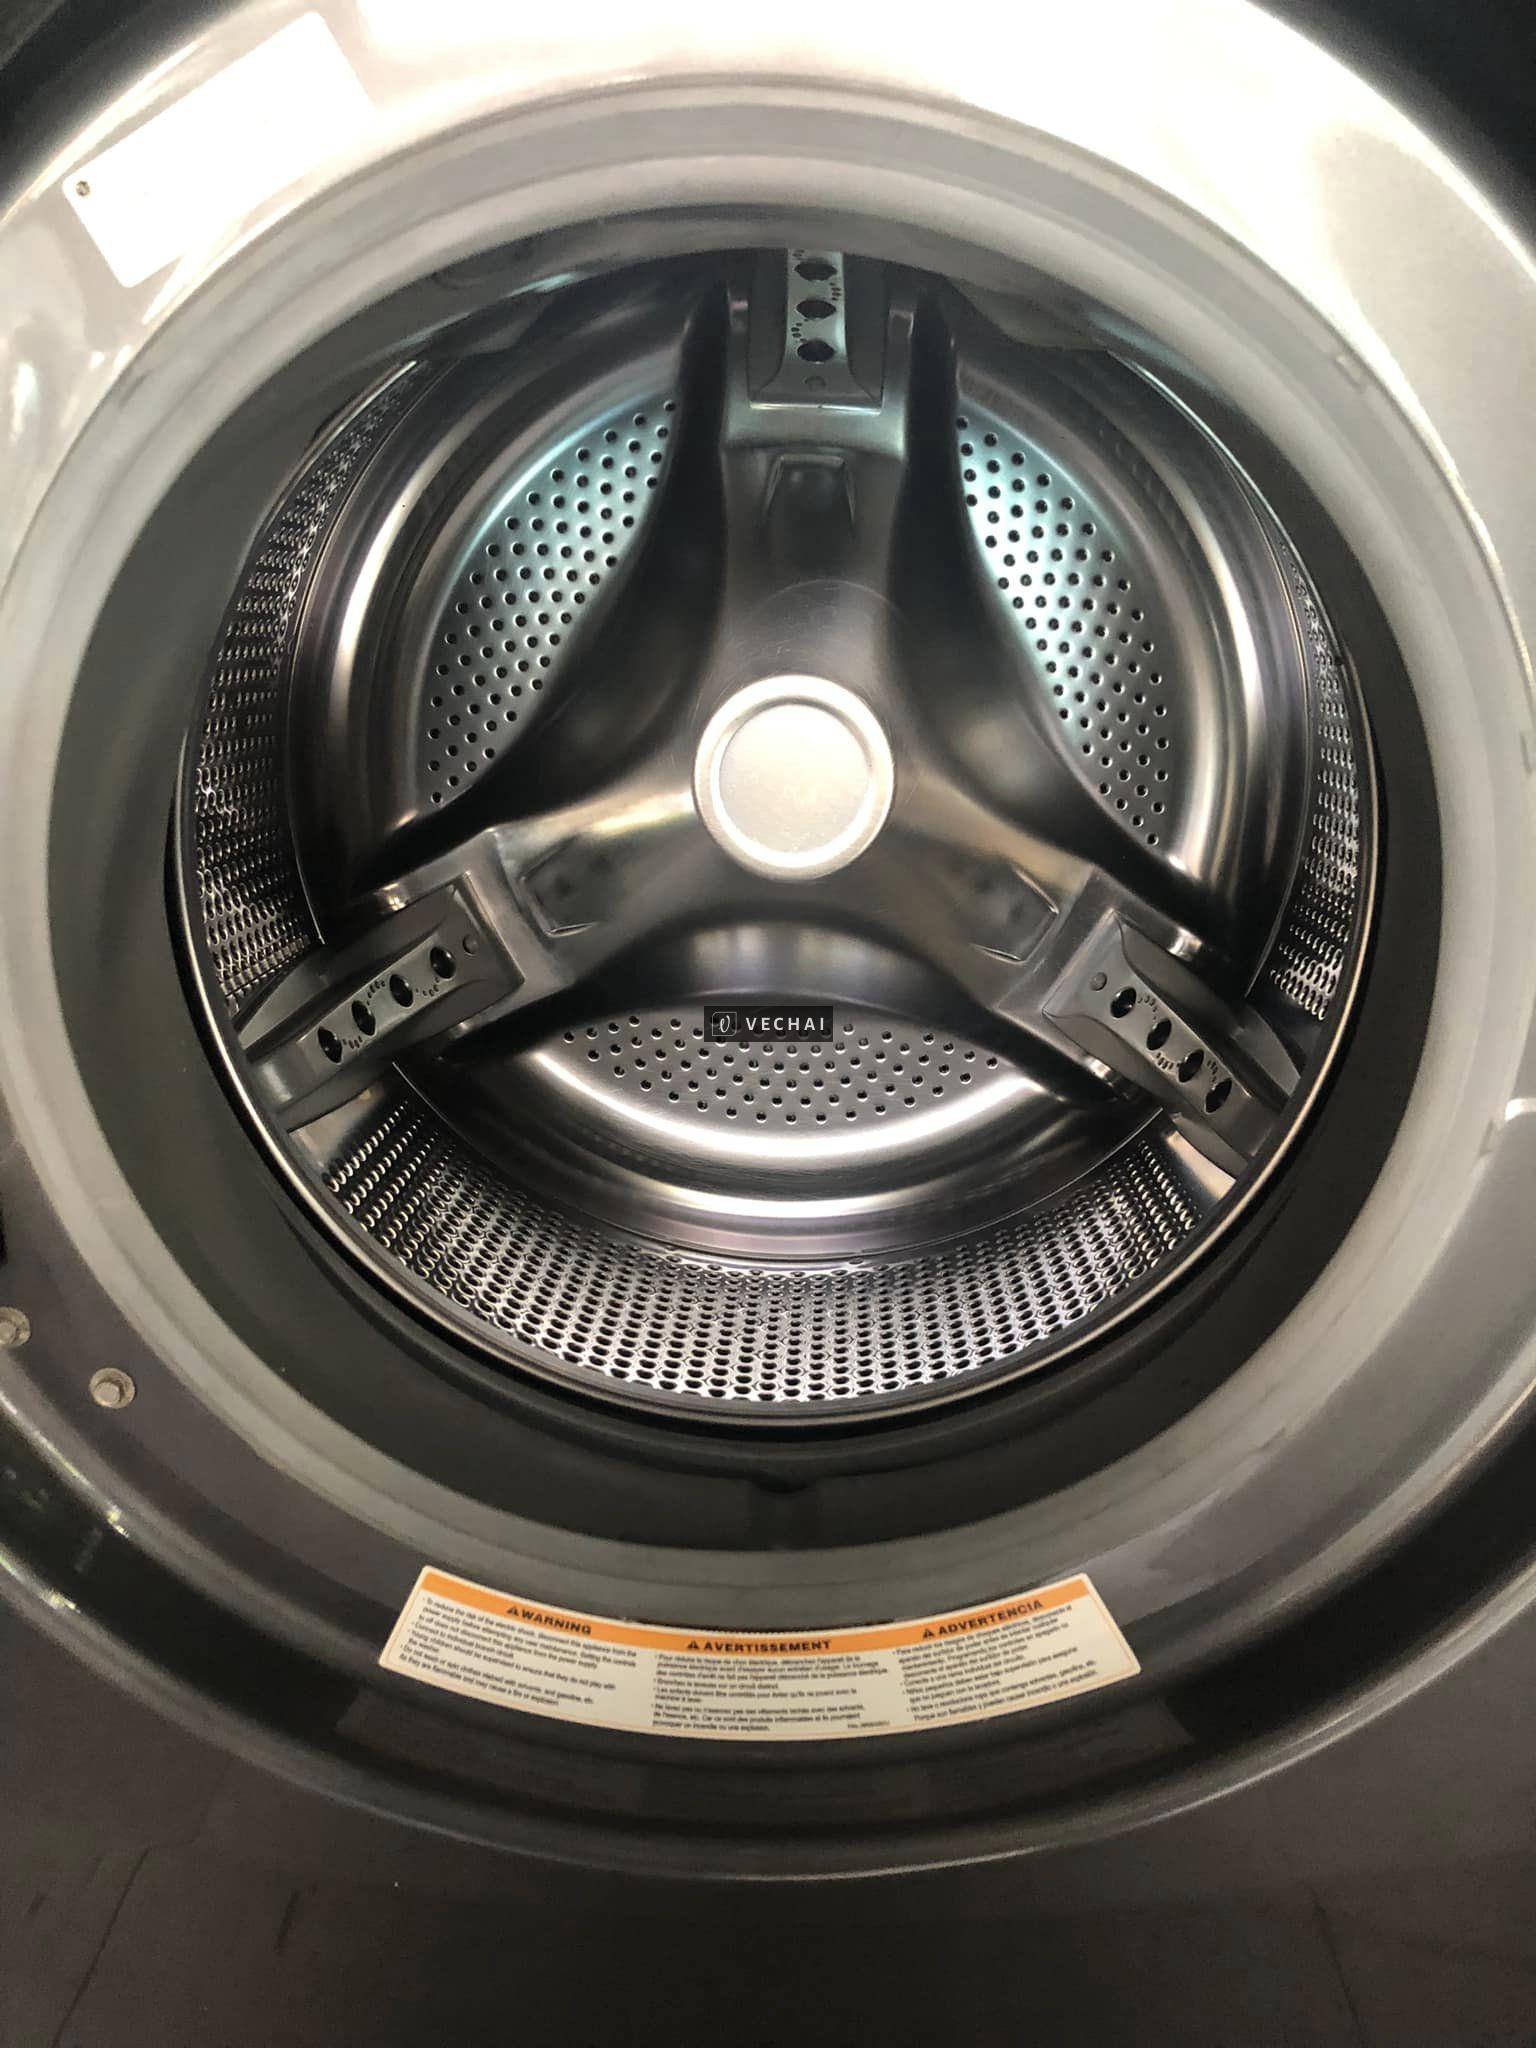 Máy Giặt LG 17kg Cửa Ngang Tiết Kiệm Điện Nước